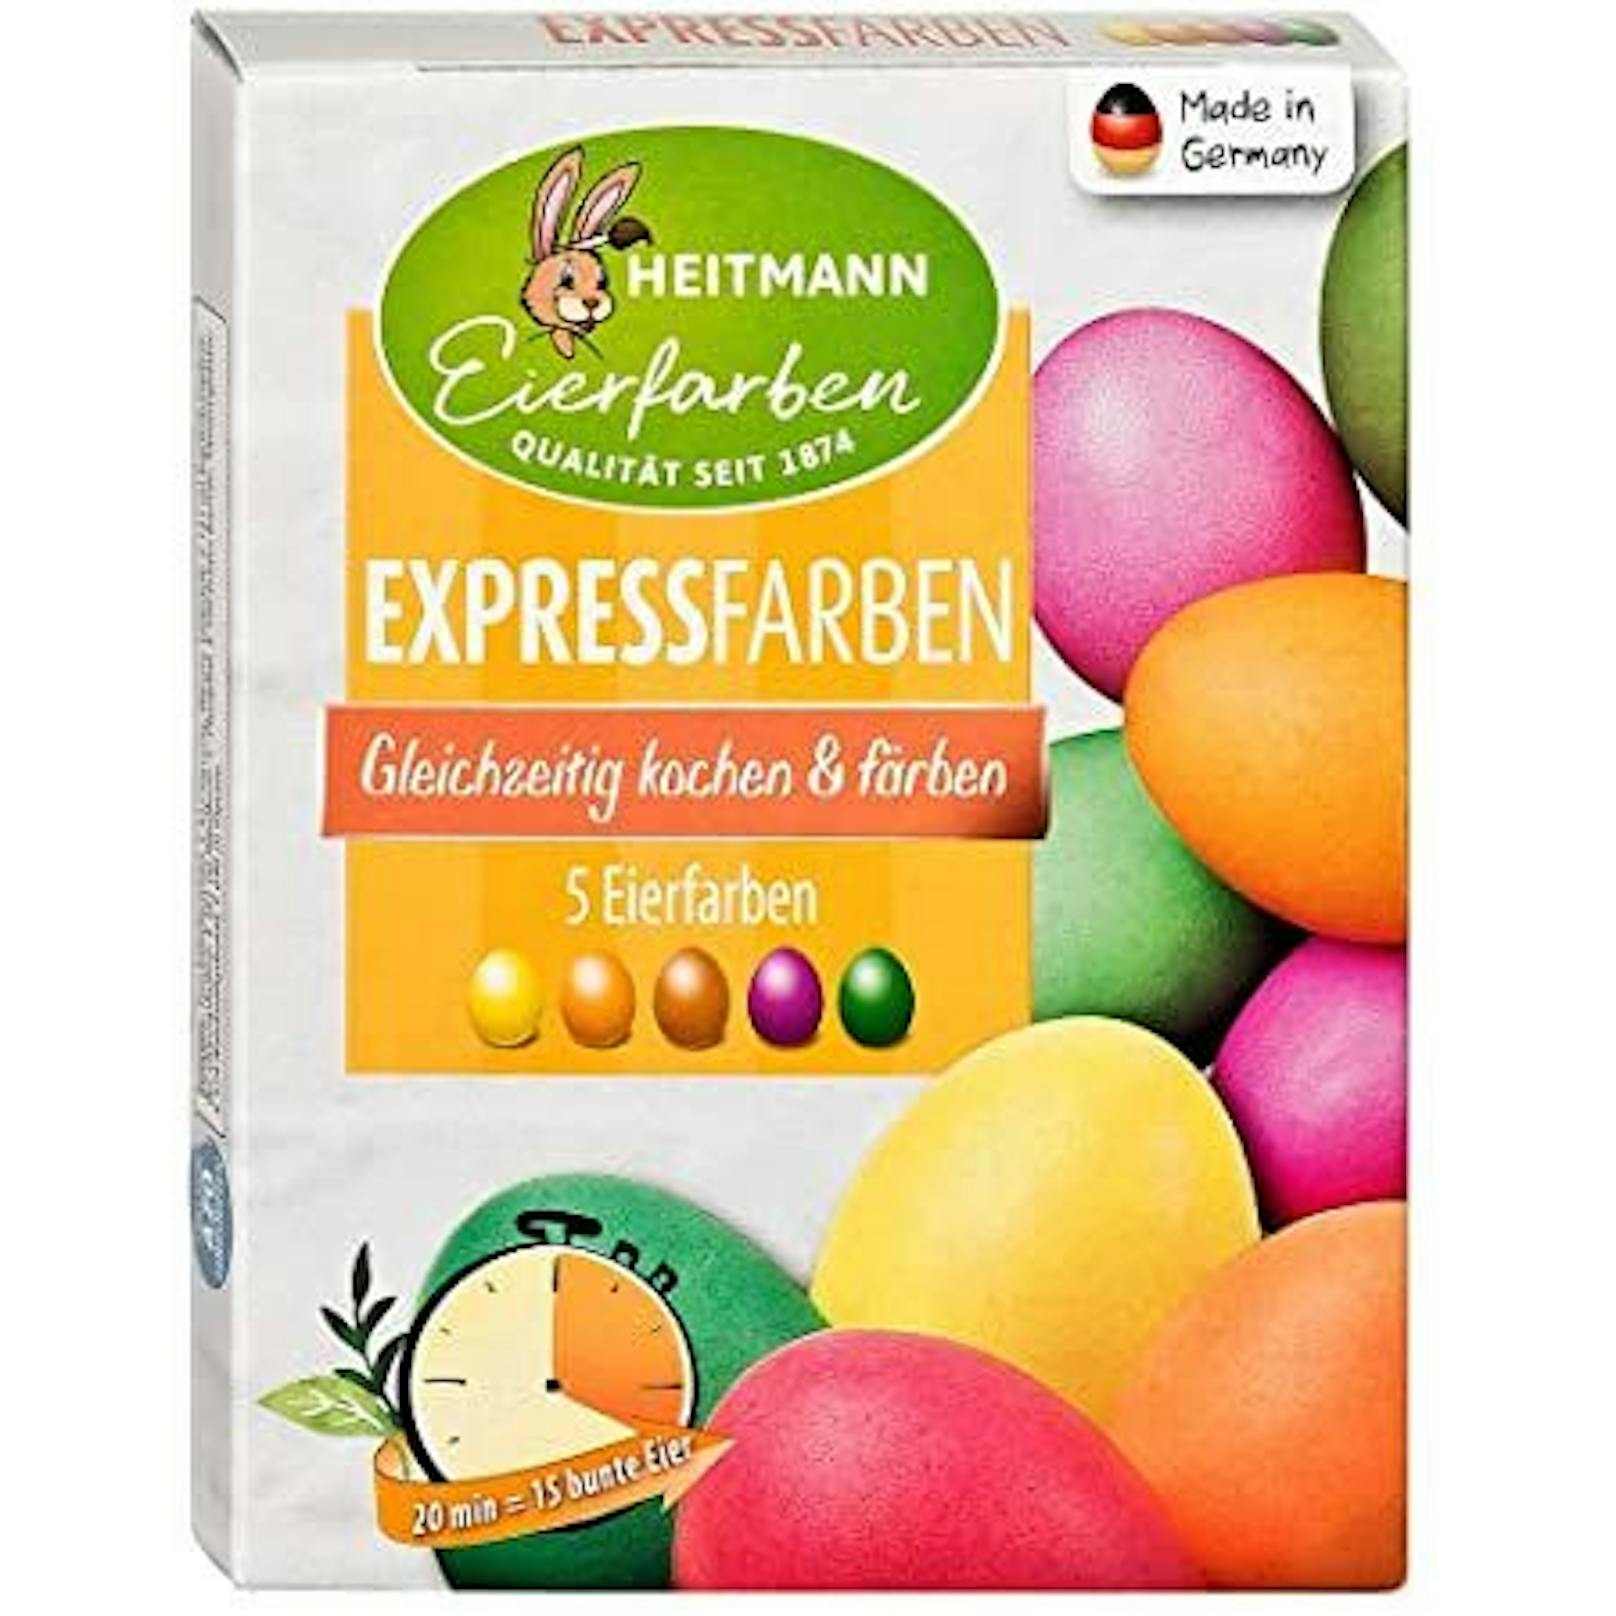 "Flüssige Eierfarben" und "Expressfarben" von Heitmann, erhältlich bei INTERSPAR.